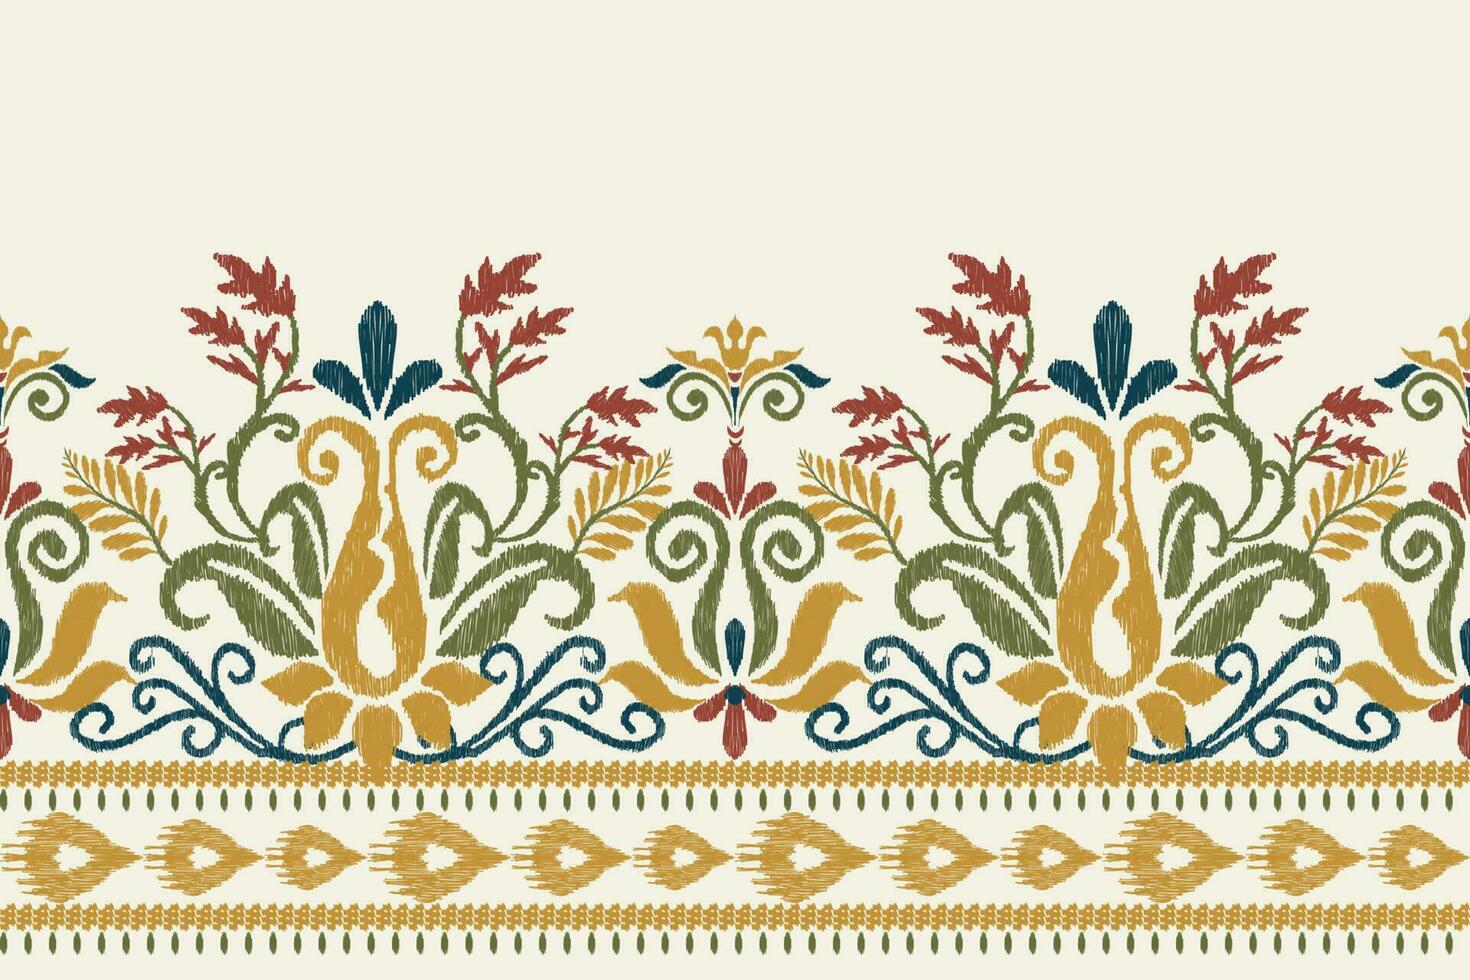 ikat blommig paisley broderi på vit bakgrund.ikat etnisk orientalisk mönster traditionell.aztec stil abstrakt vektor illustration.design för textur, tyg, kläder, inslagning, dekoration, sarong, halsduk